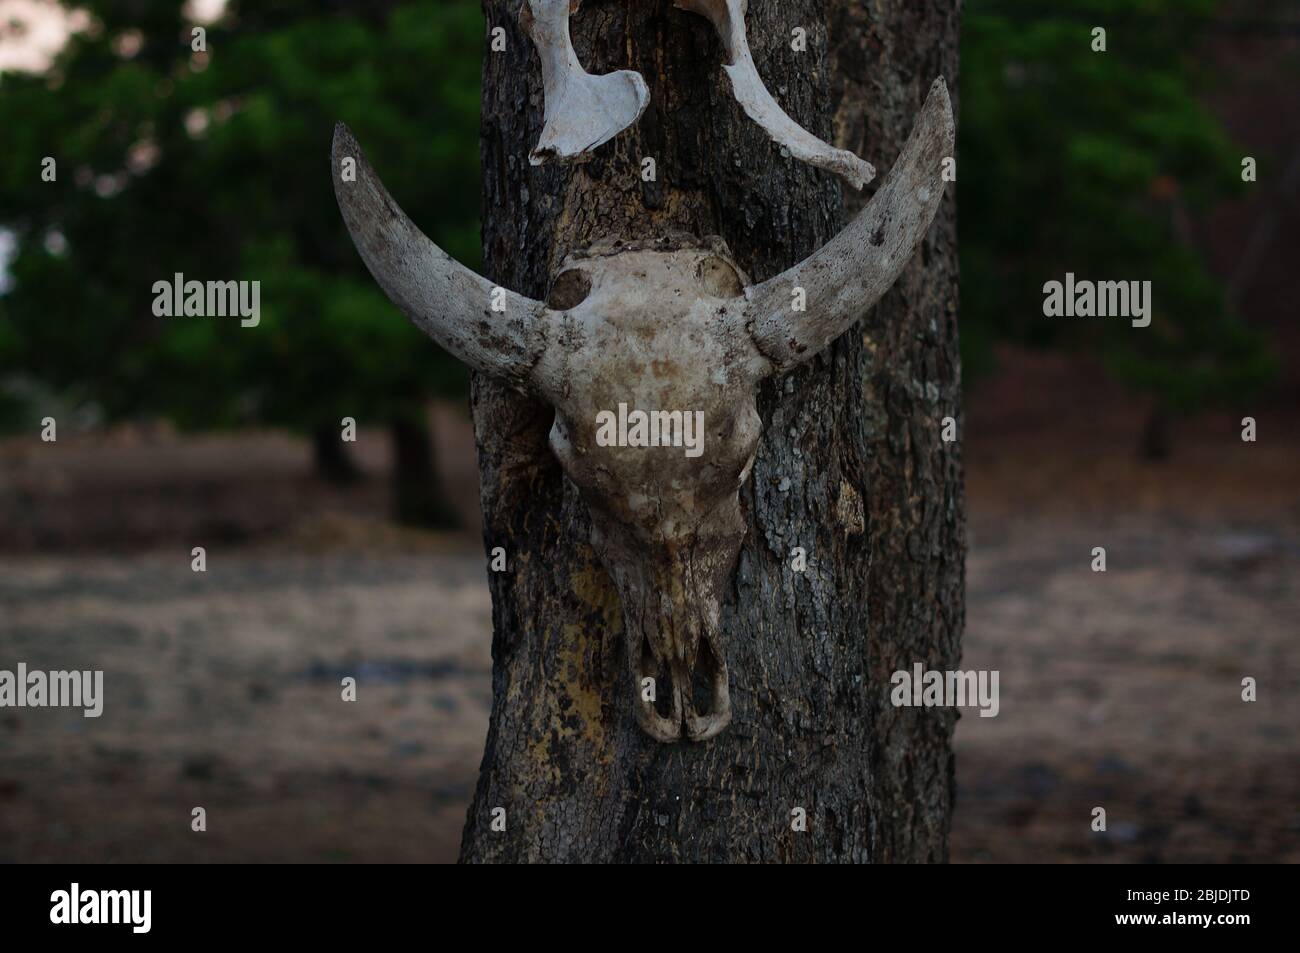 los cráneos de animales colgados de árboles se encuentran en el desierto, restos de depredadores salvajes y depredadores naturales. Foto de stock